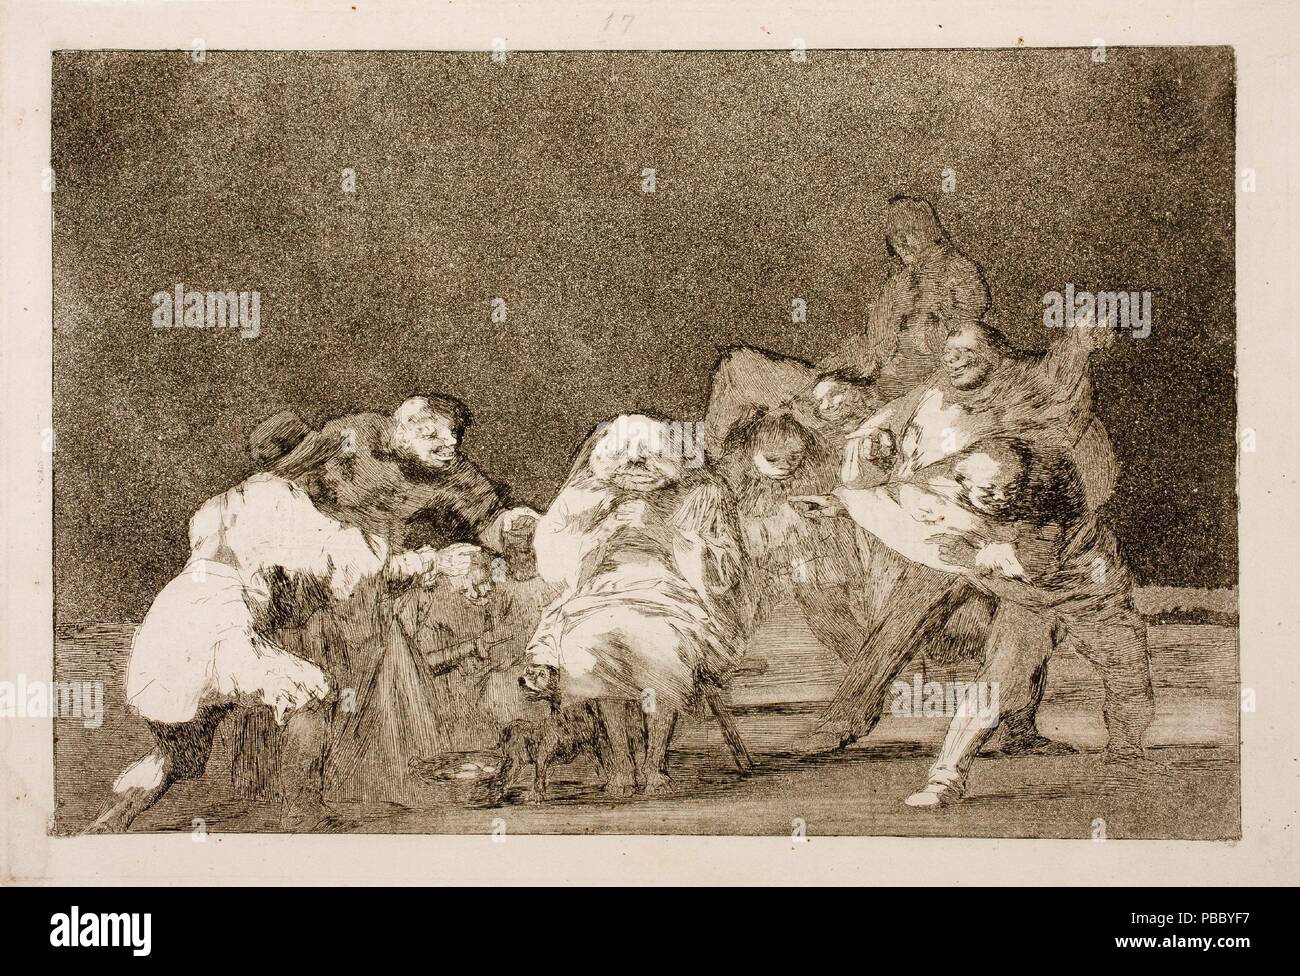 Francisco de Goya y Lucientes/"Treue". 1815 - 1819. Radierung, Aquatinta, Polierstahl auf Webte Papier. Museum: Museo del Prado, Madrid, España. Stockfoto